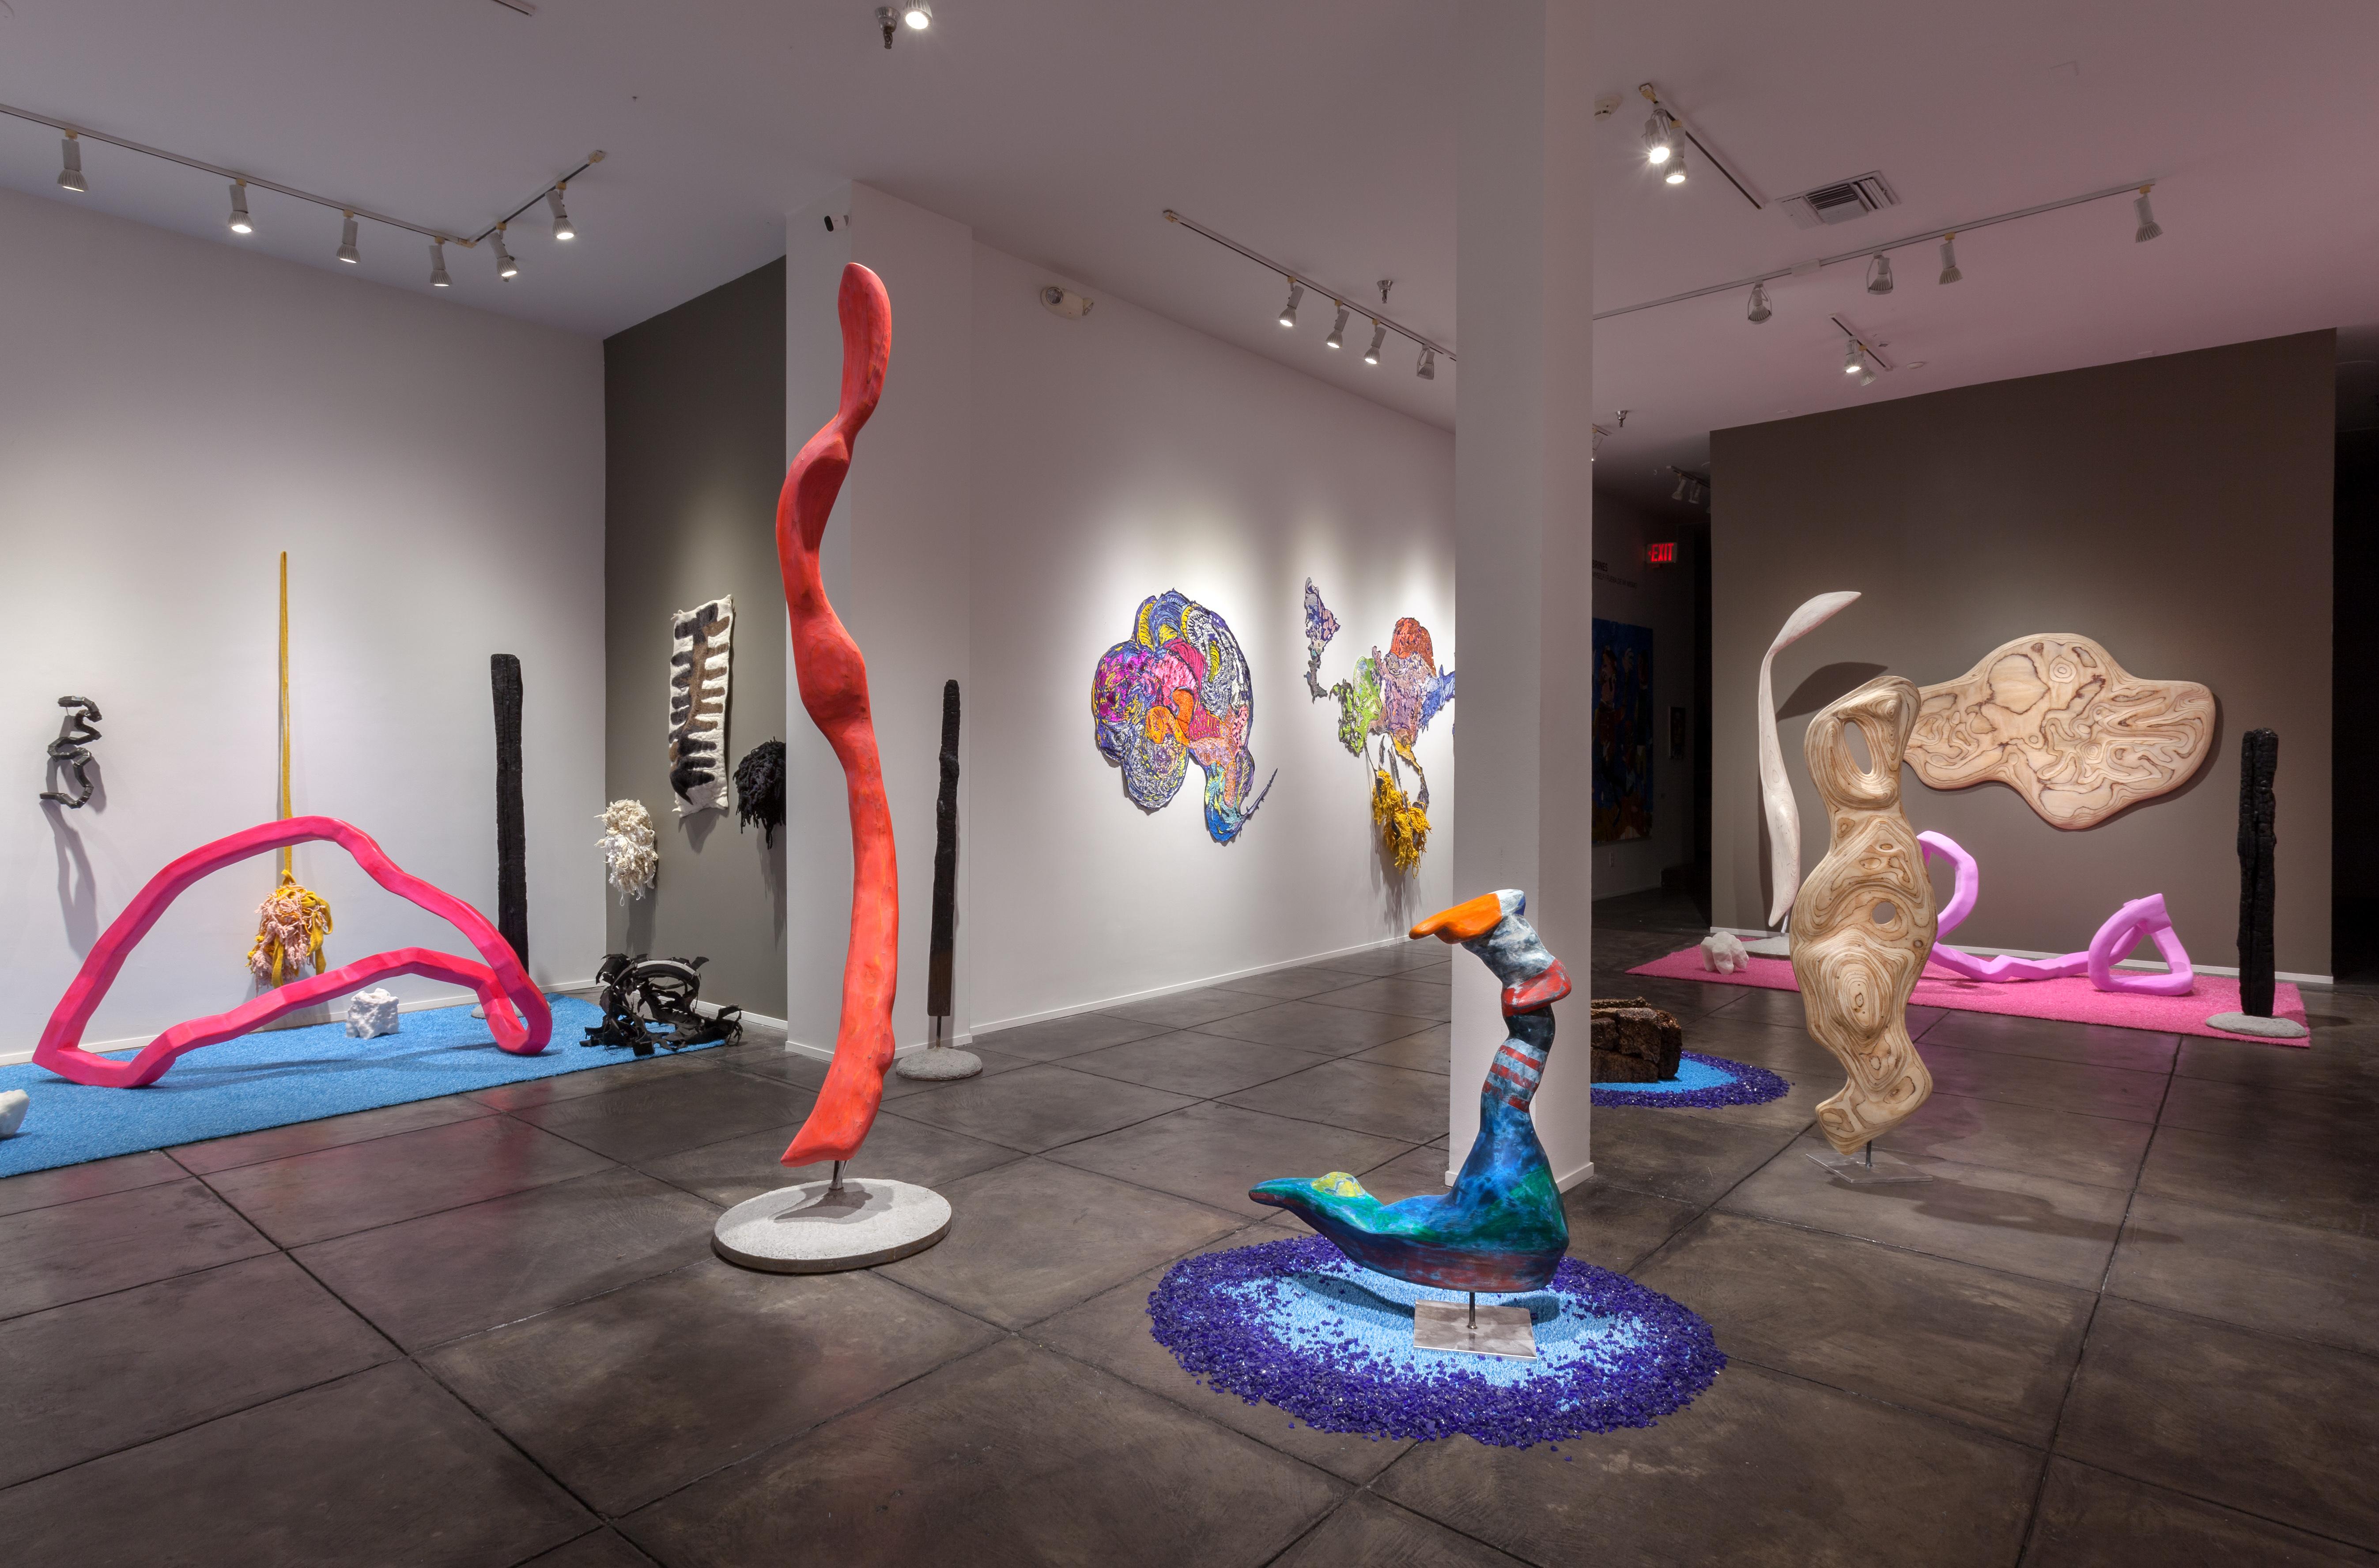 Die JONATHAN FERRARA GALLERY freut sich, Shape-Memory anzukündigen, eine Einzelausstellung mit neuen textilen und skulpturalen Kunstwerken der in New Orleans lebenden Künstlerin Gina Phillips. Diese Ausstellung, die ursprünglich aus ihrem Aufenthalt